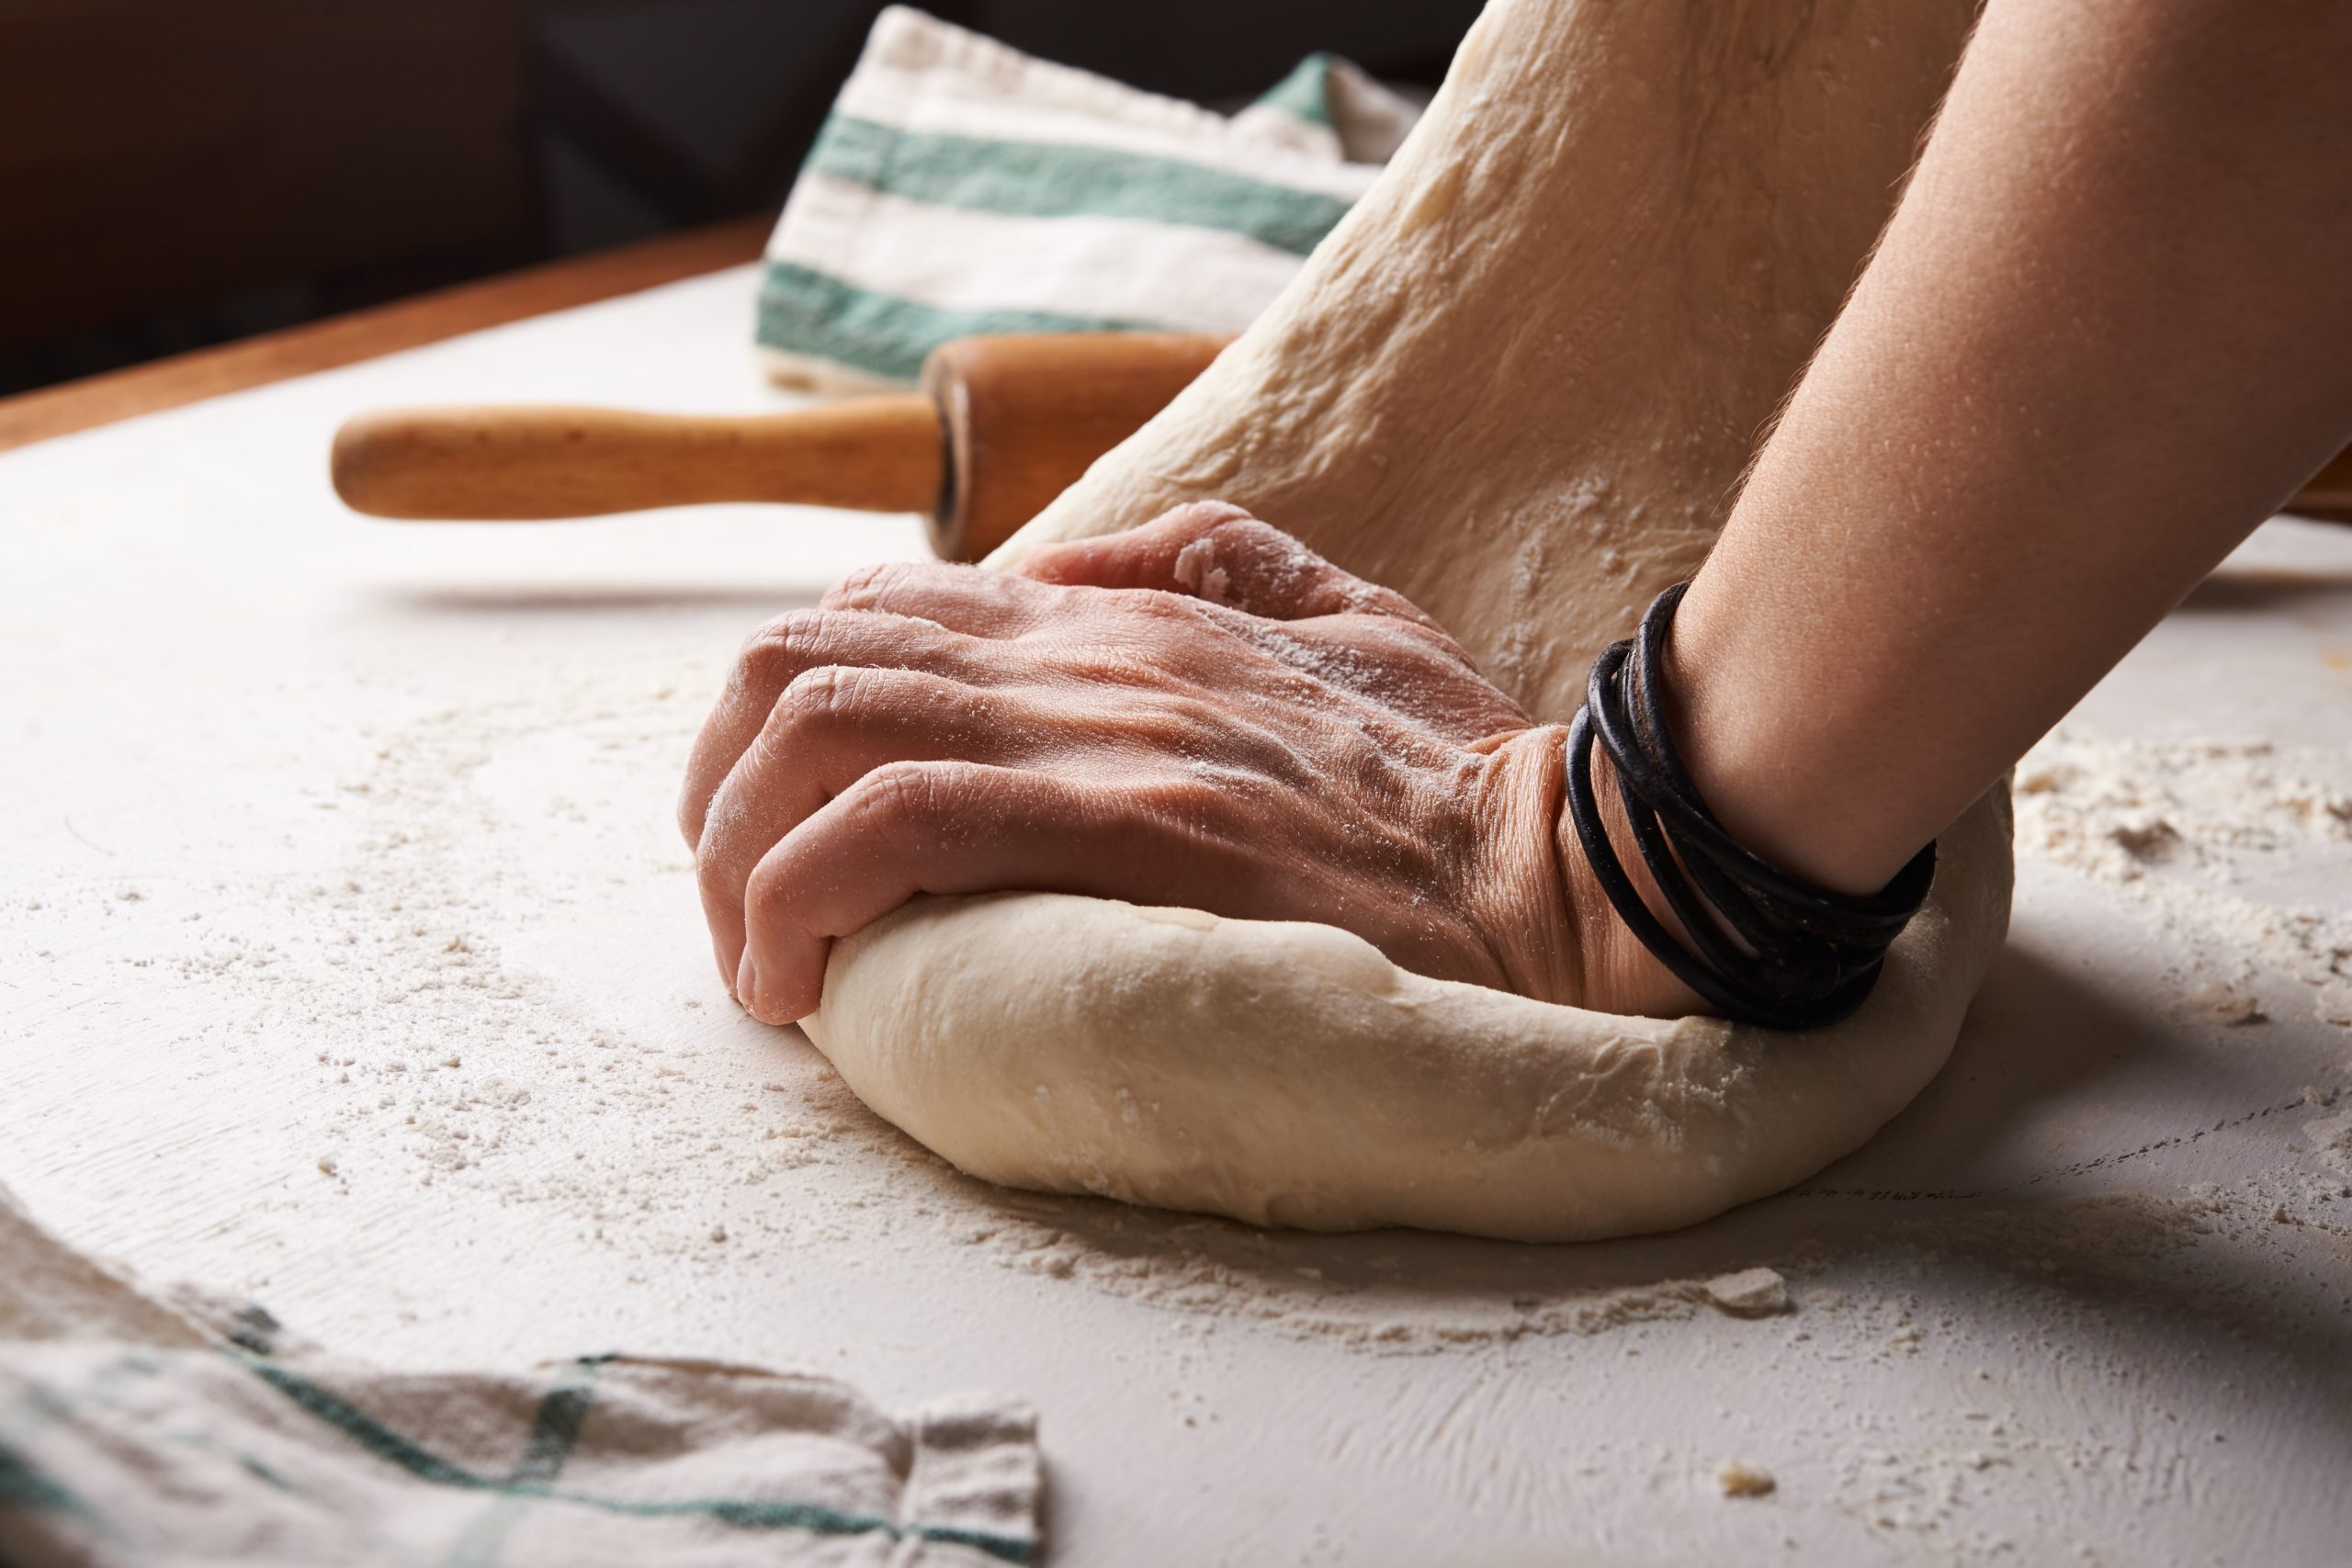 初めての人のためのパン作りの 工程 手作りパンのブログ イベント出店を目指して